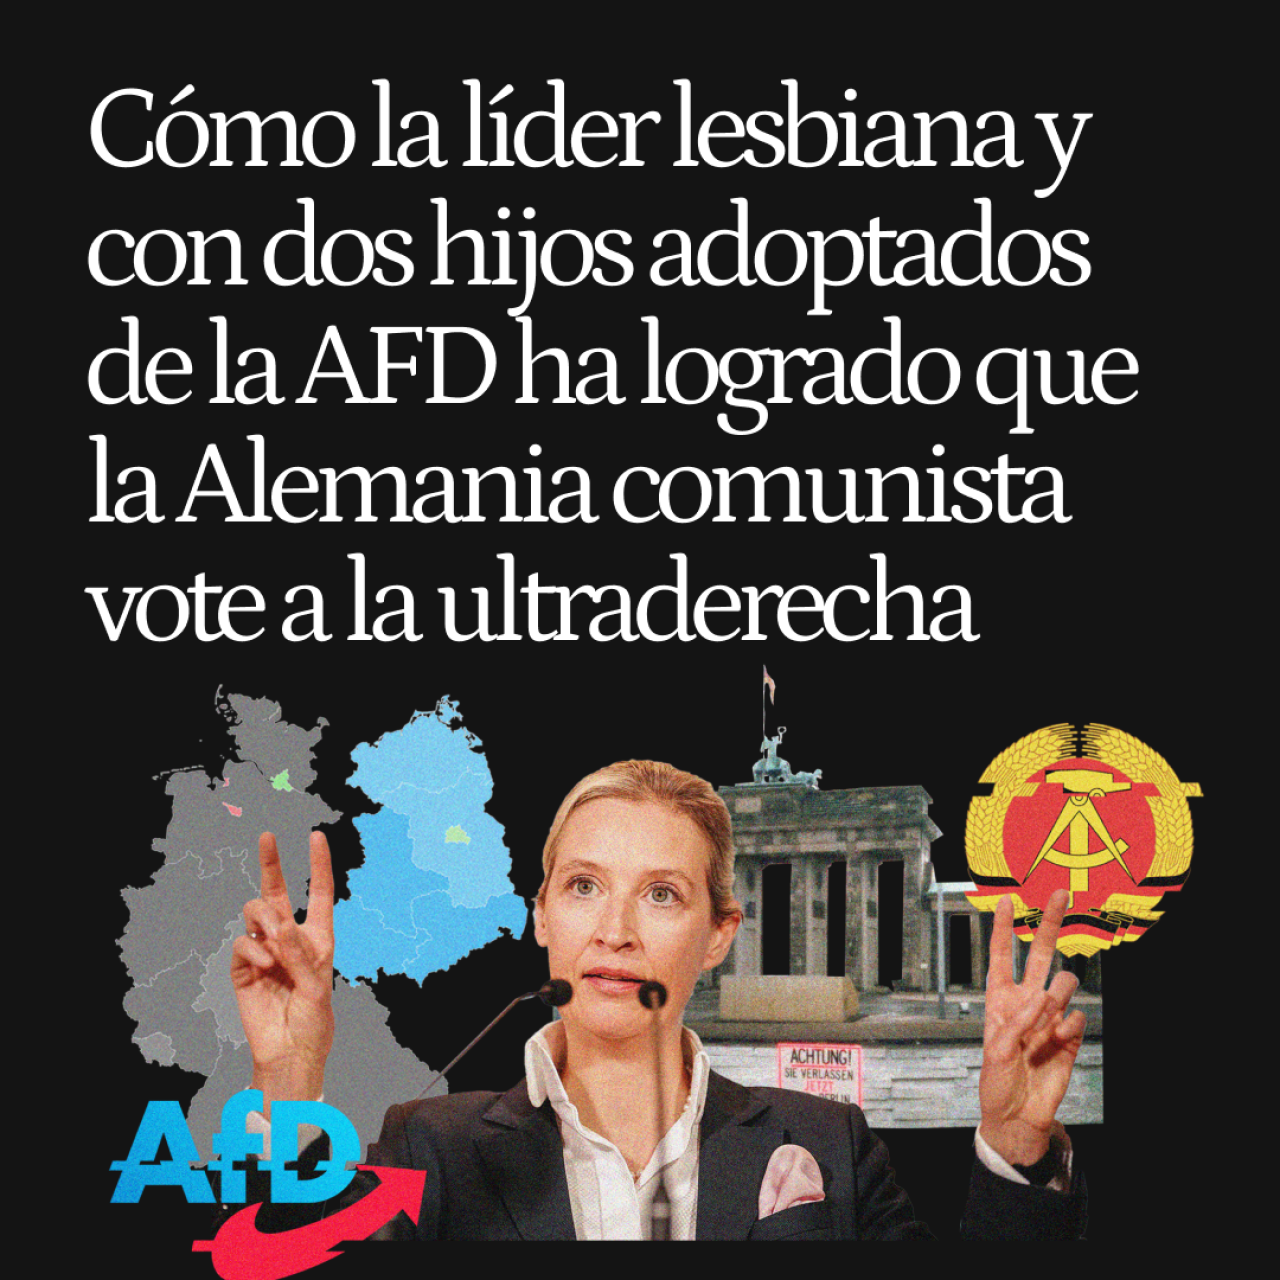 Cómo Alice Weidel, la líder lesbiana de la AfD con dos hijos adoptados, ha logrado que la Alemania comunista vote a la ultraderecha